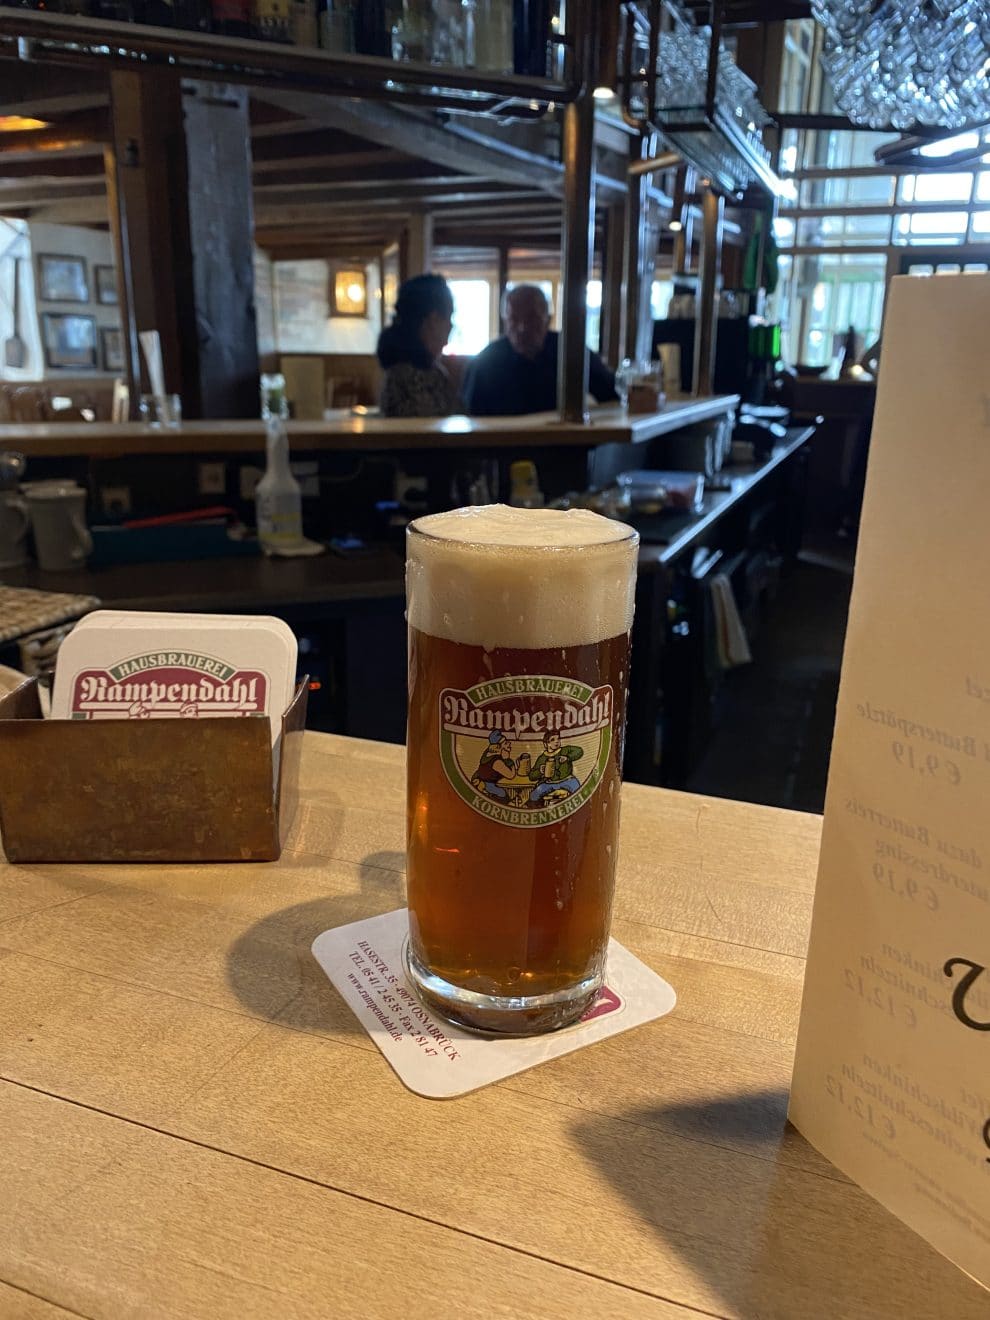 Proef het bier van Osnabrück bij Bierbrouwerij Rampendahl